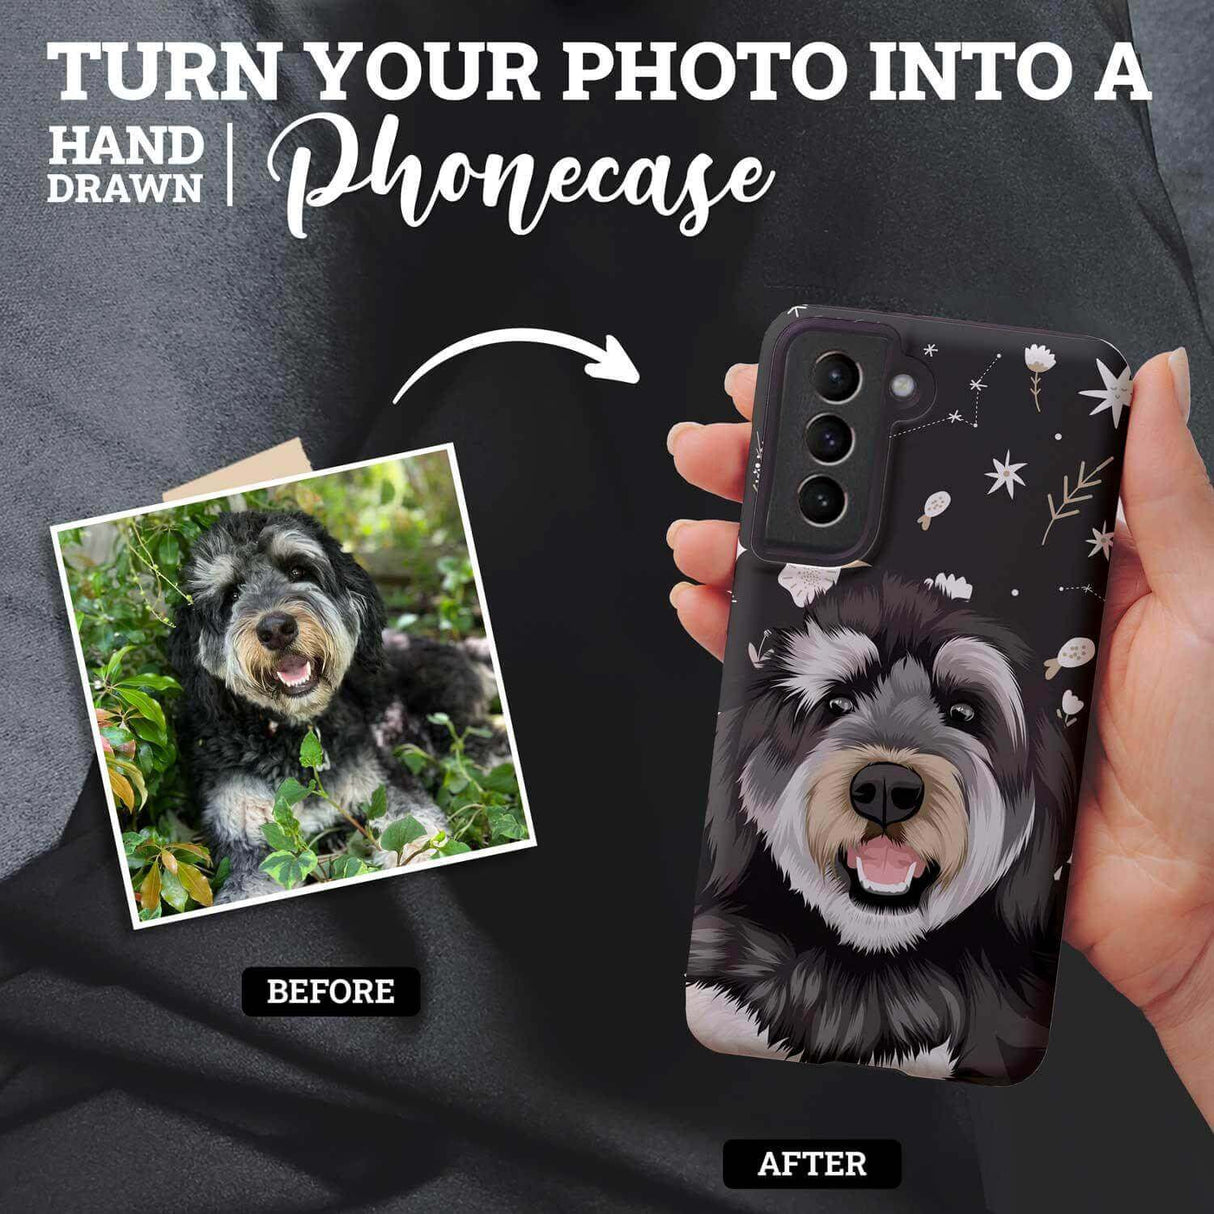 Personalized Boho Dog Pattern Phone Case